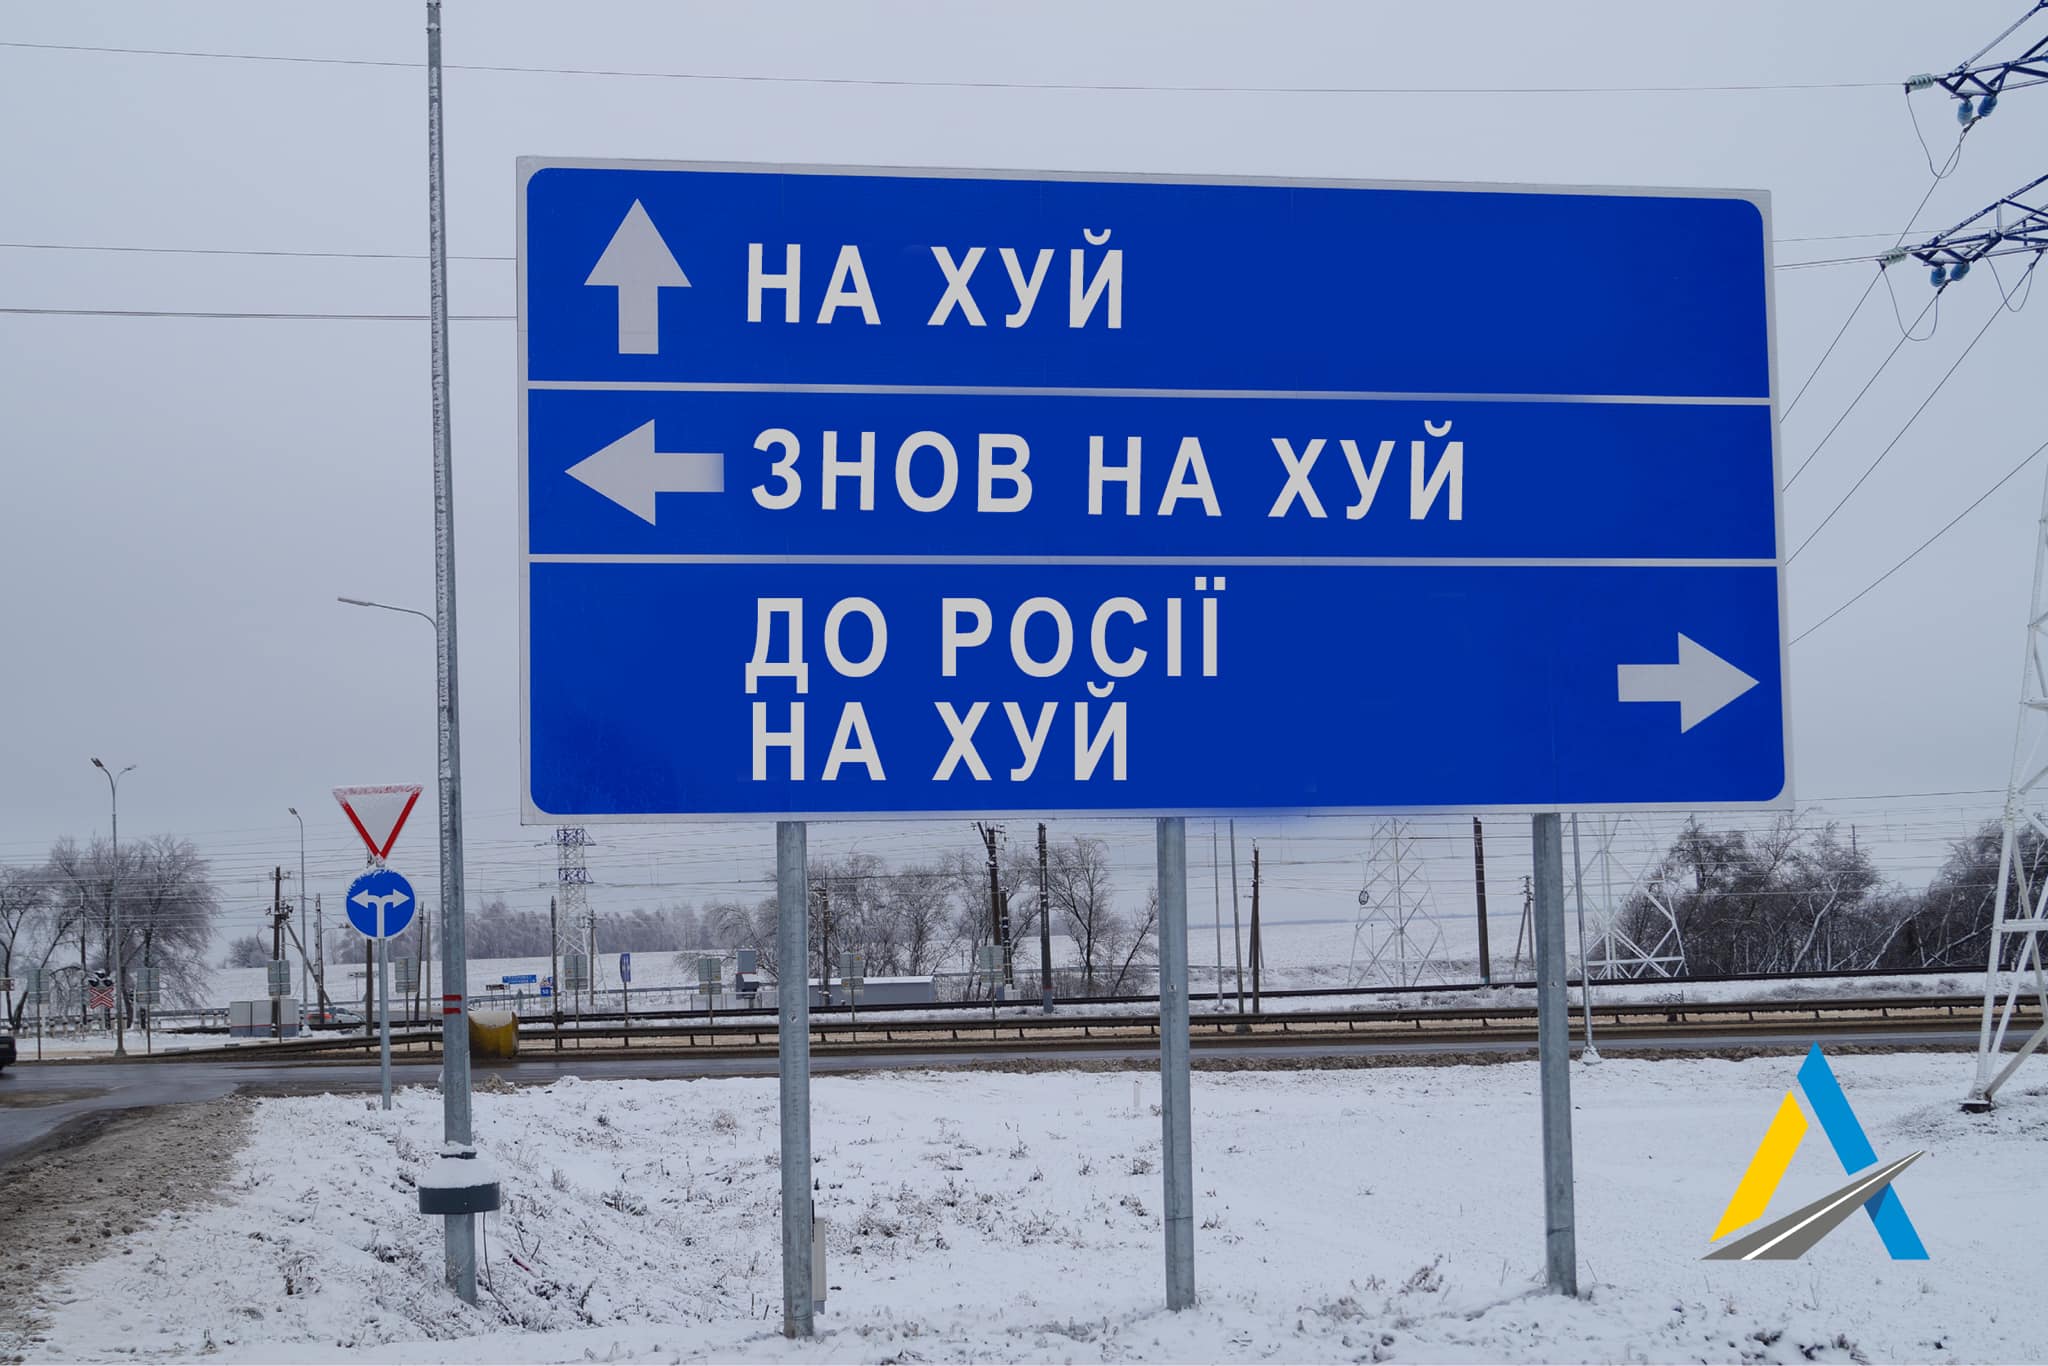 Зрозумілі й чіткі дорожні знаки для оккупанта від Укравтодору - гумор й агресія водночас. Фото: facebook.com/Ukravtodor.Gov.Ua/